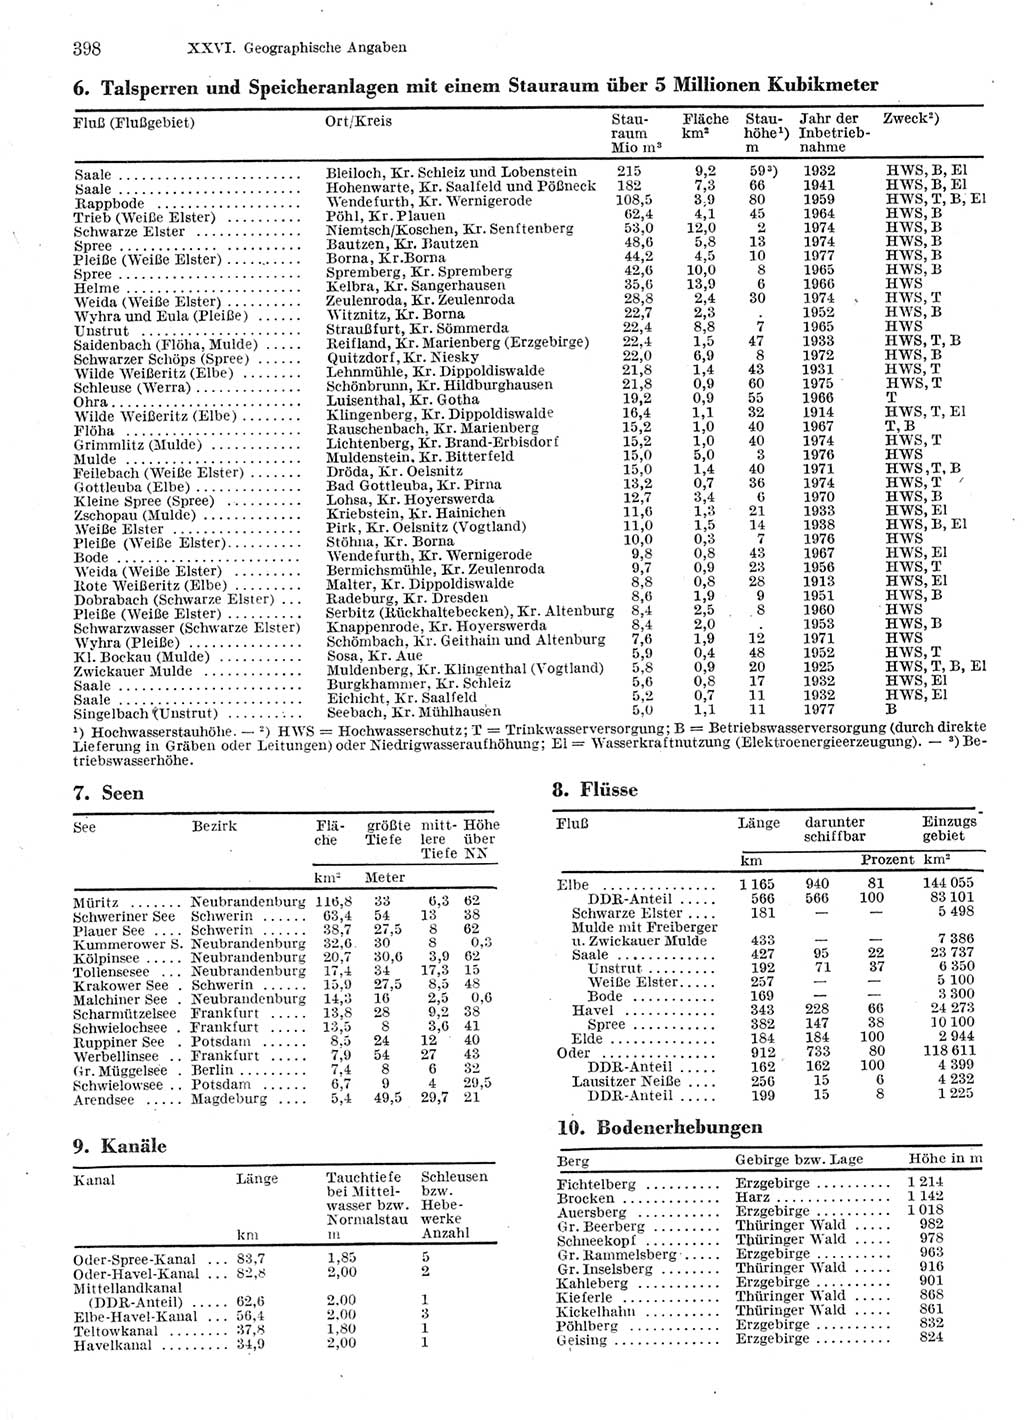 Statistisches Jahrbuch der Deutschen Demokratischen Republik (DDR) 1978, Seite 398 (Stat. Jb. DDR 1978, S. 398)